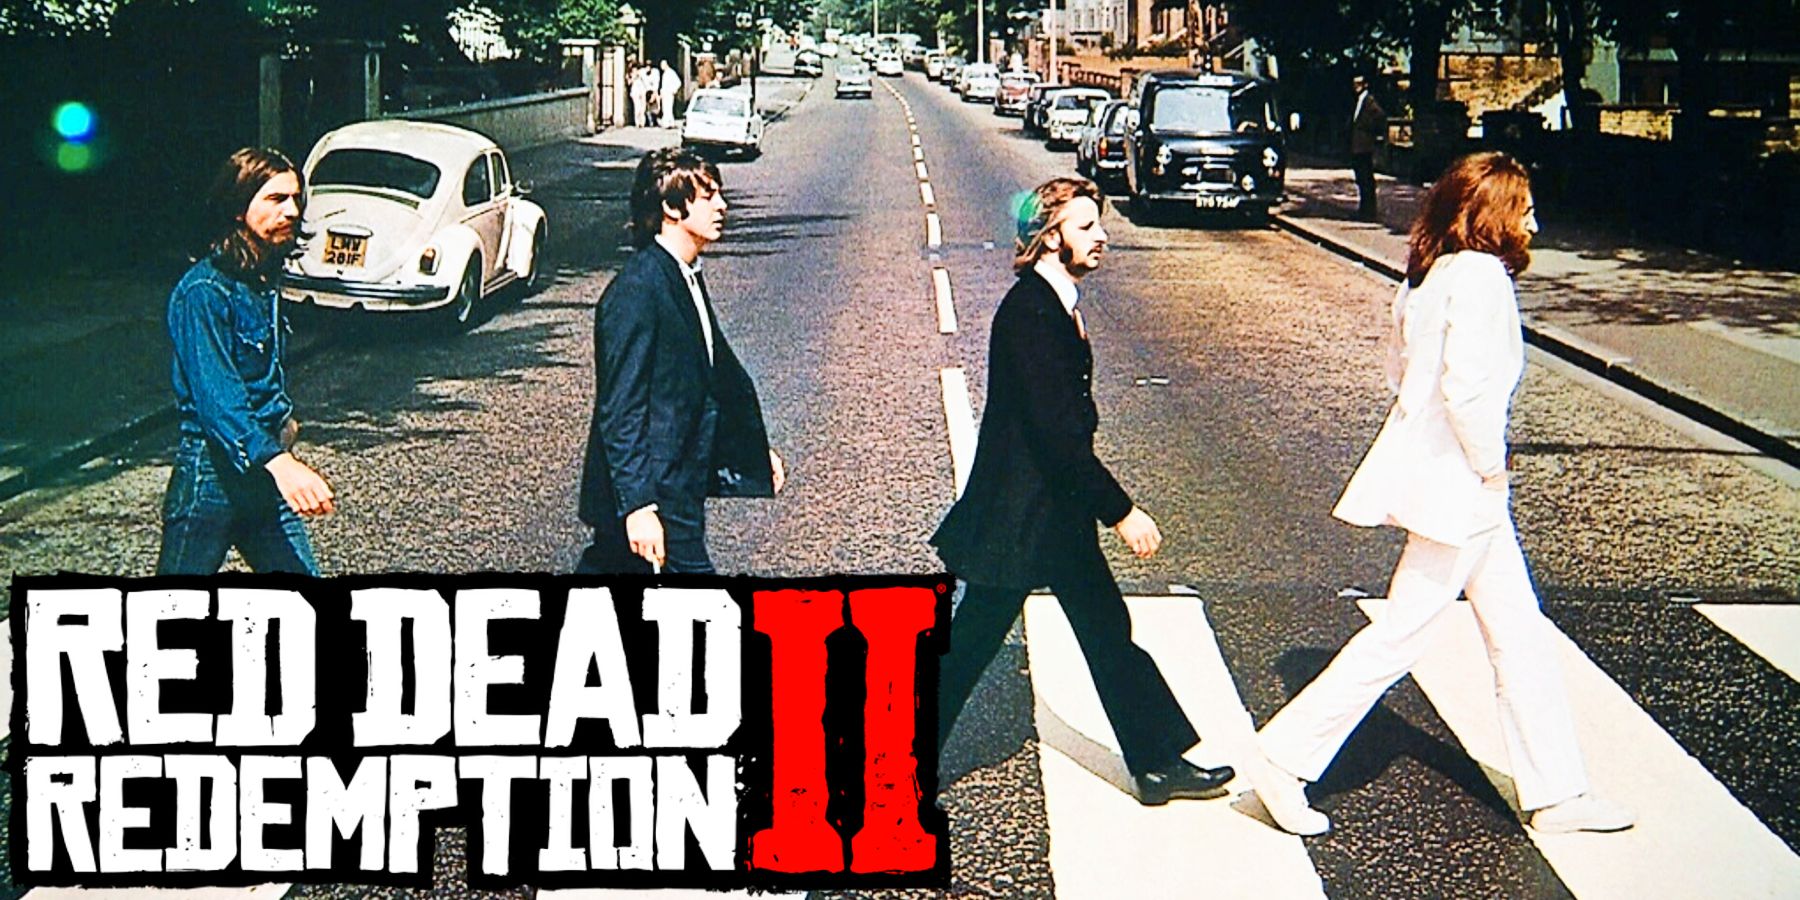 Peminat Red Dead Redemption 2 Berjaya Menghasilkan Semula Kulit Album Ikonik Beatles Dalam Permainan